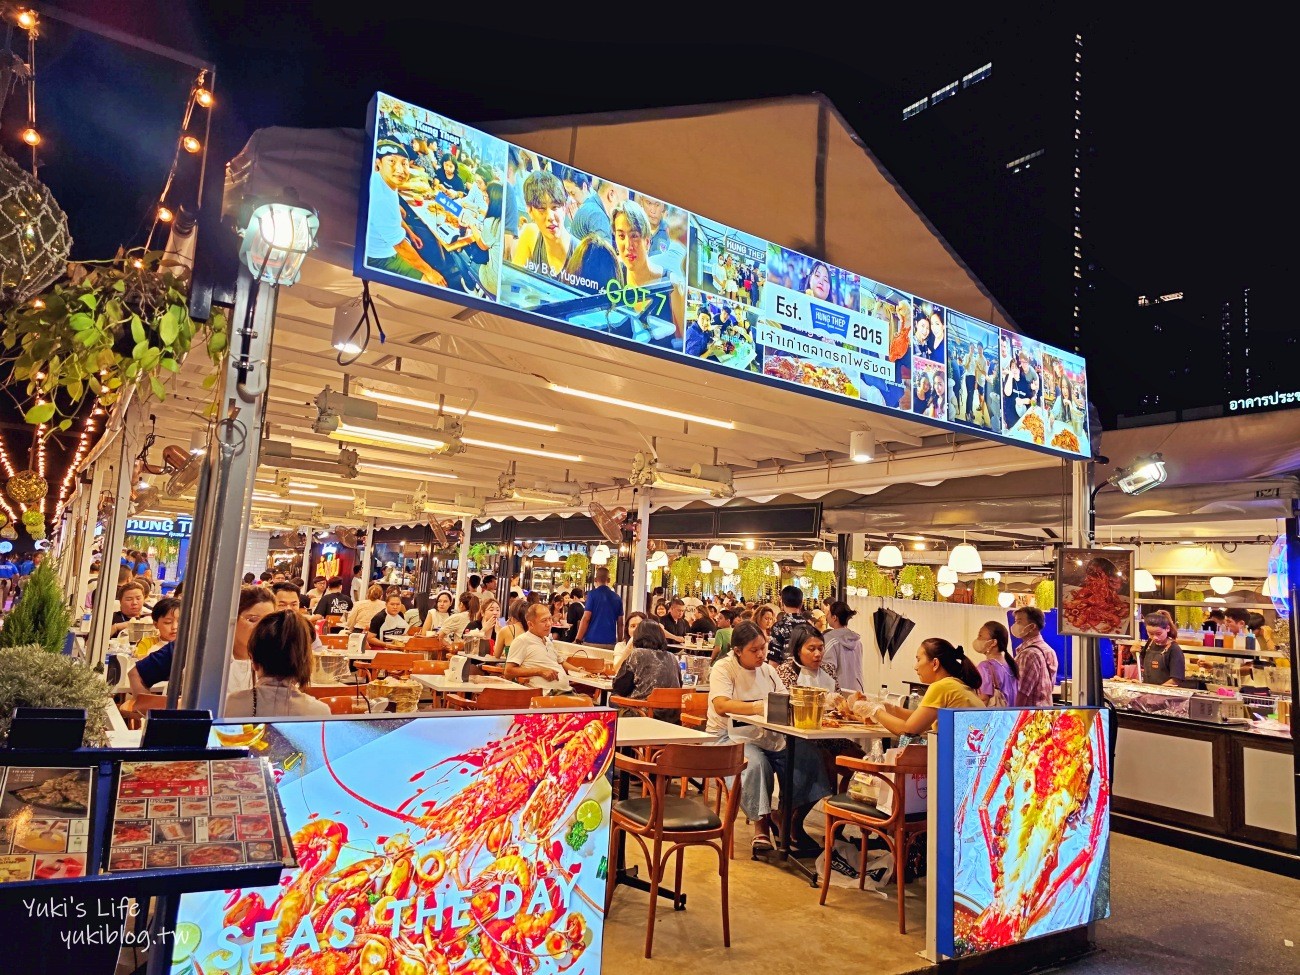 曼谷捷運地鐵景點攻略│曼谷MRT/BTS沿線必玩必吃景點,咖啡廳,美食,飯店住宿 - yuki.tw